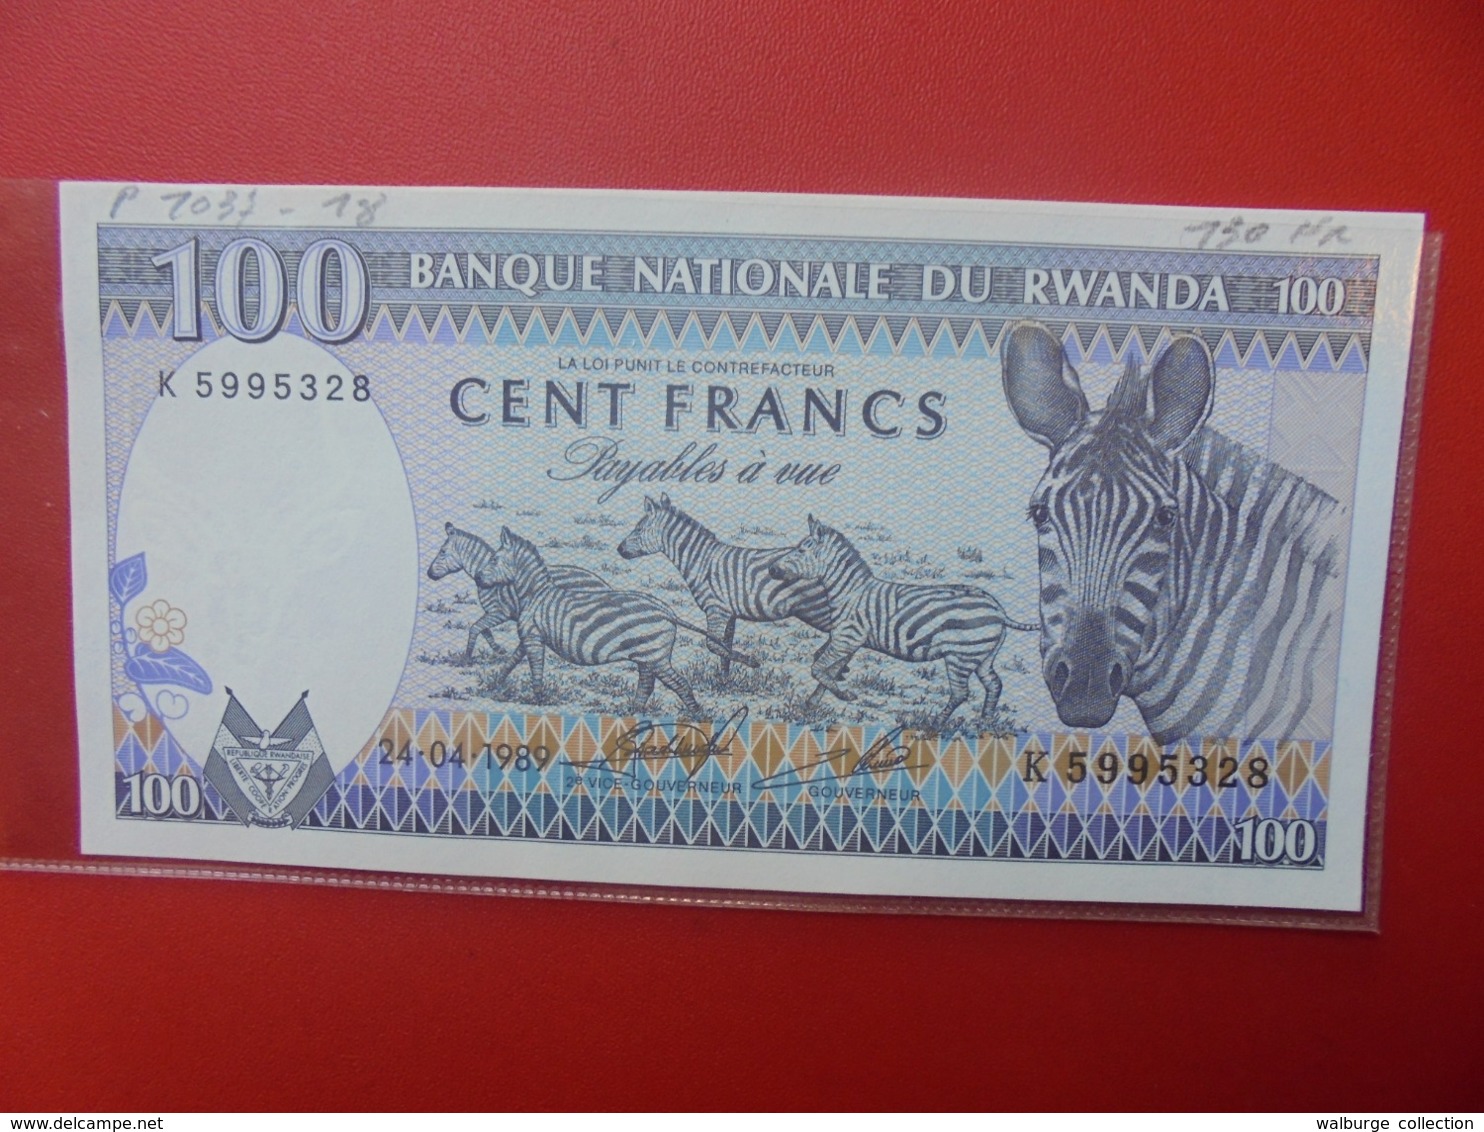 RWANDA 100 FRANCS 1989 PEU CIRCULER  (B.7) - Rwanda